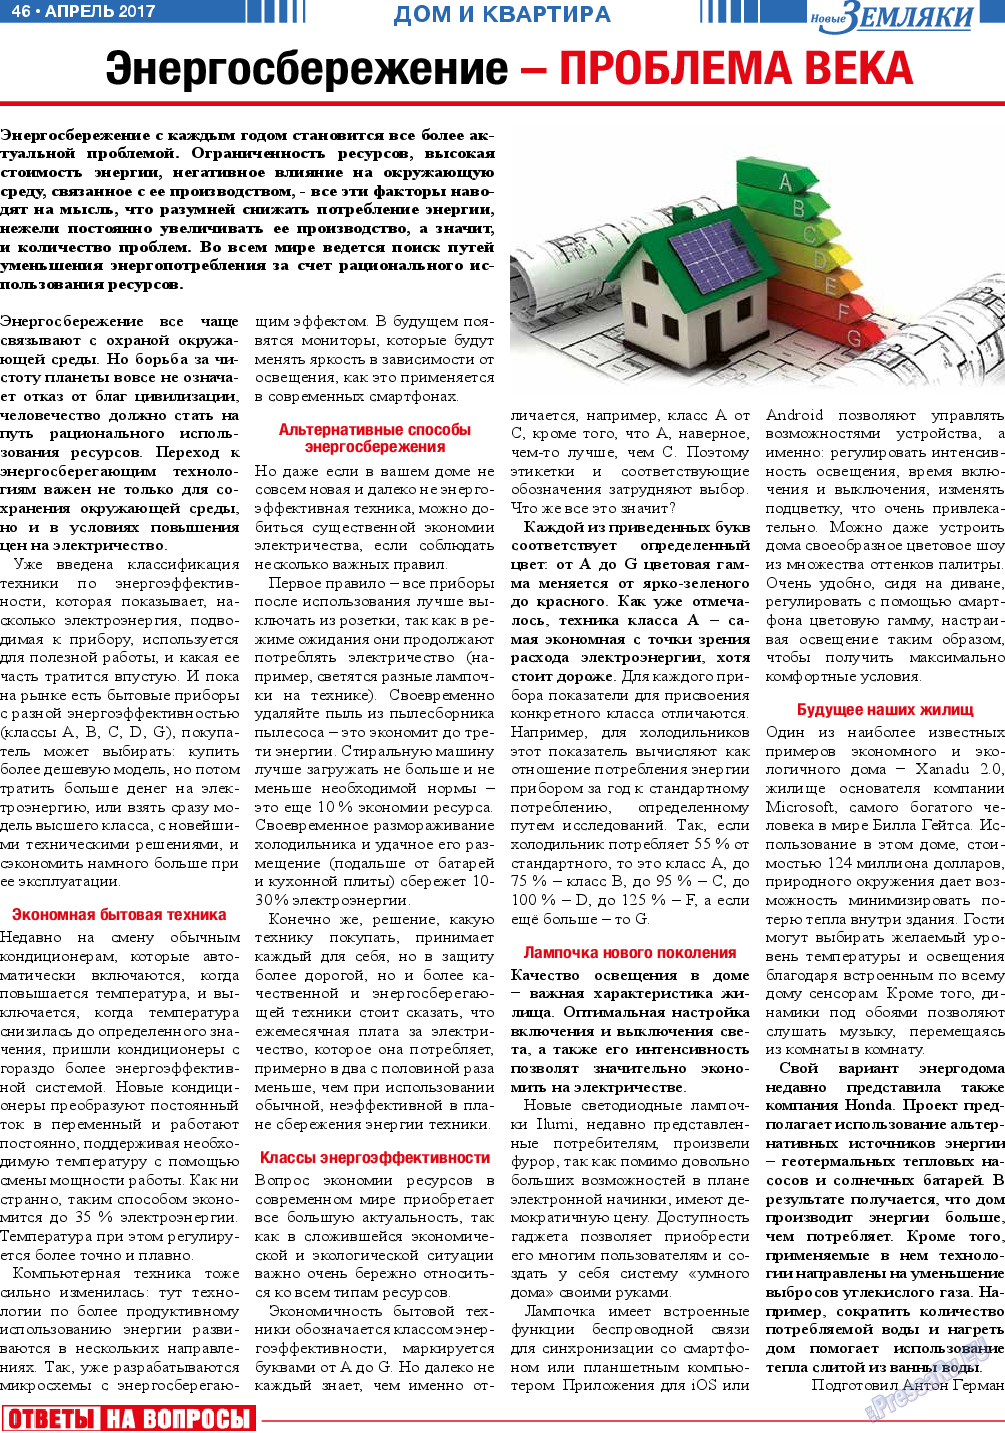 Новые Земляки (газета). 2017 год, номер 4, стр. 46